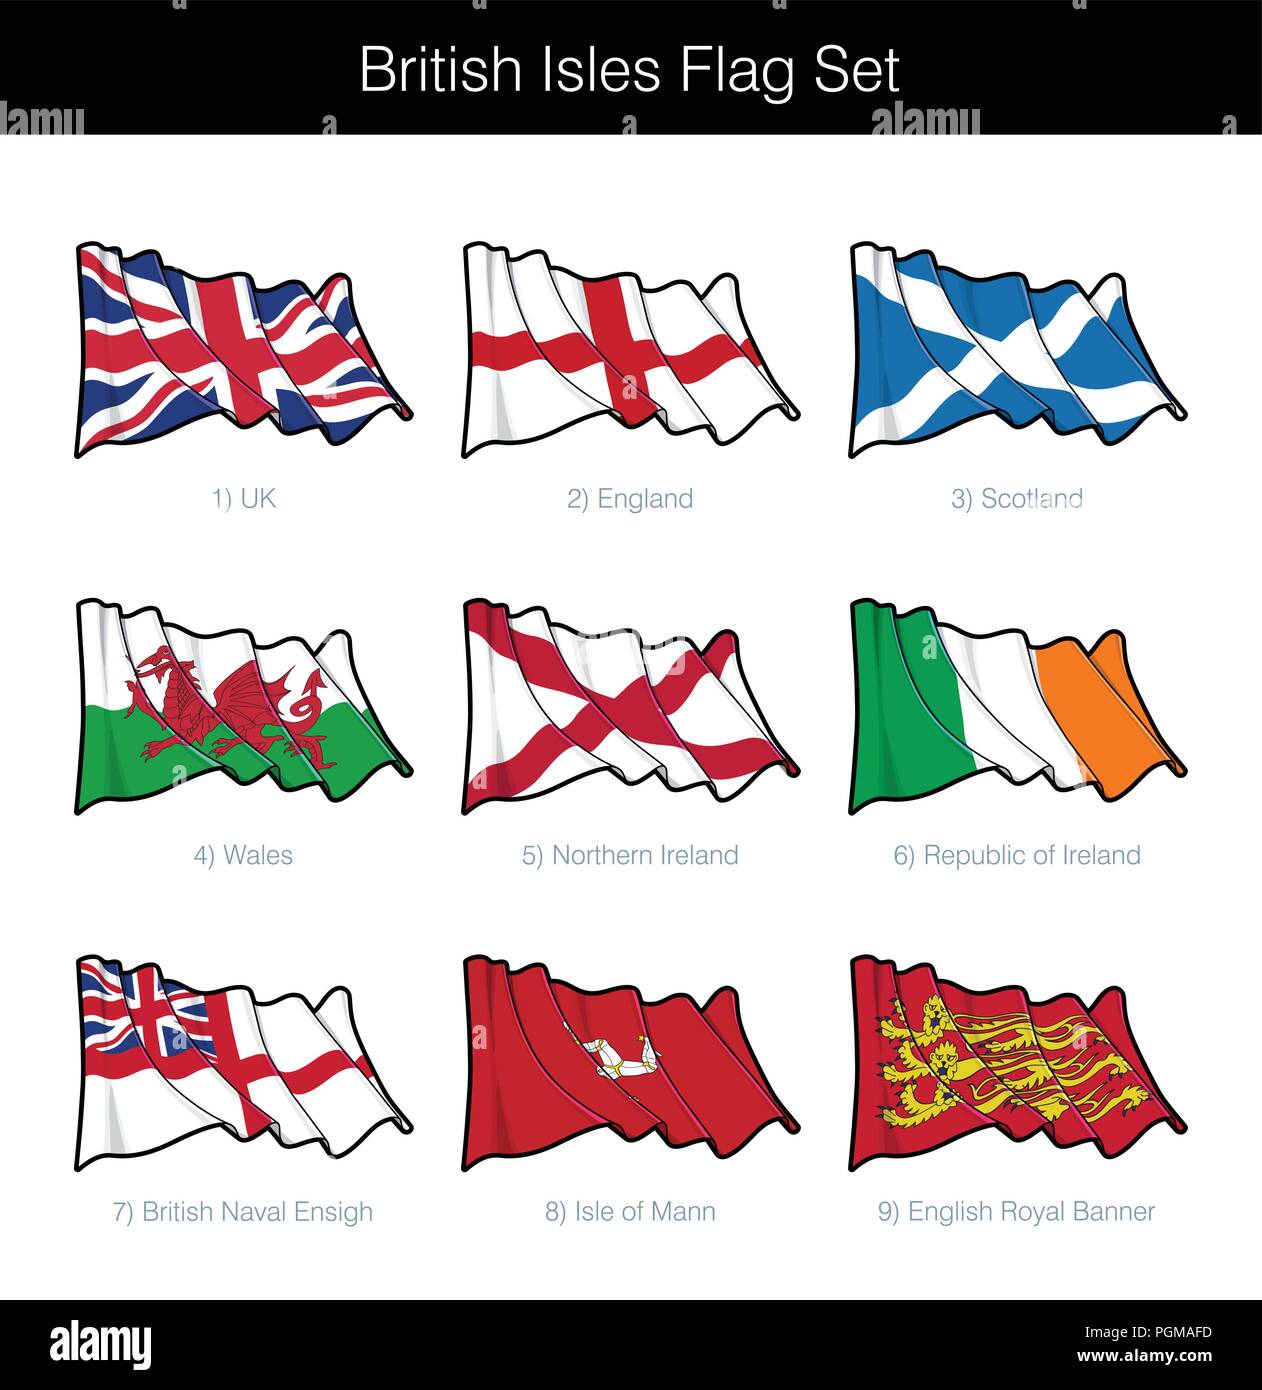 Isole britanniche sventola Bandiera Set. Il set include le bandiere del Regno Unito, Inghilterra, Scozia, Galles, Irlanda del Nord e Repubblica d Irlanda, la Marina britannica, è Illustrazione Vettoriale